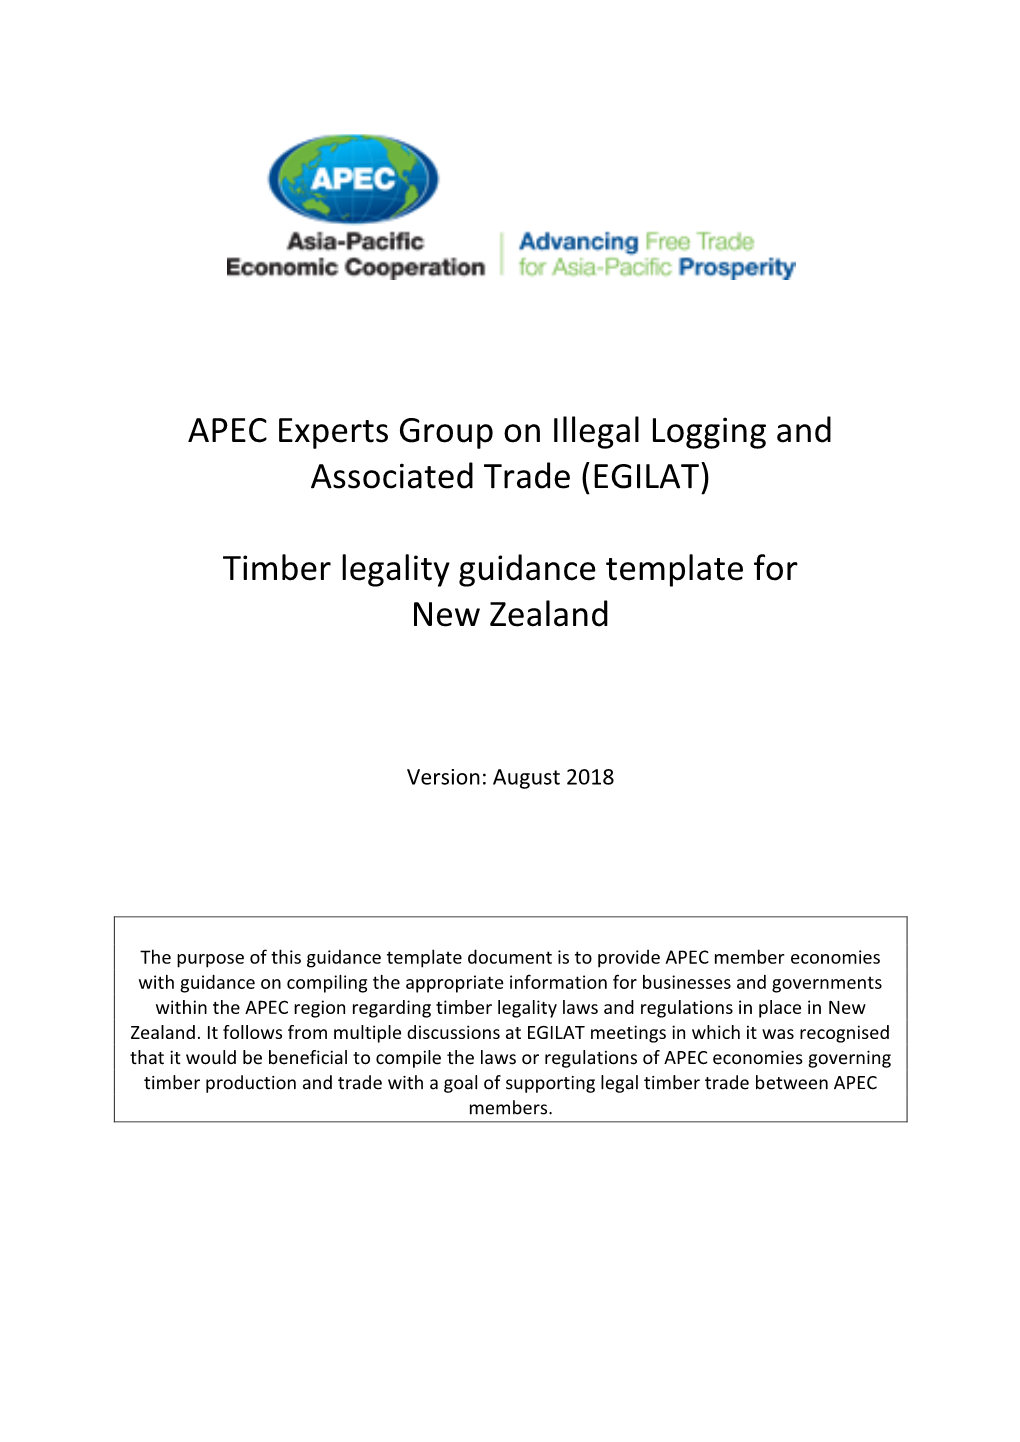 EGILAT Timber Legality Guidance Template for NZ